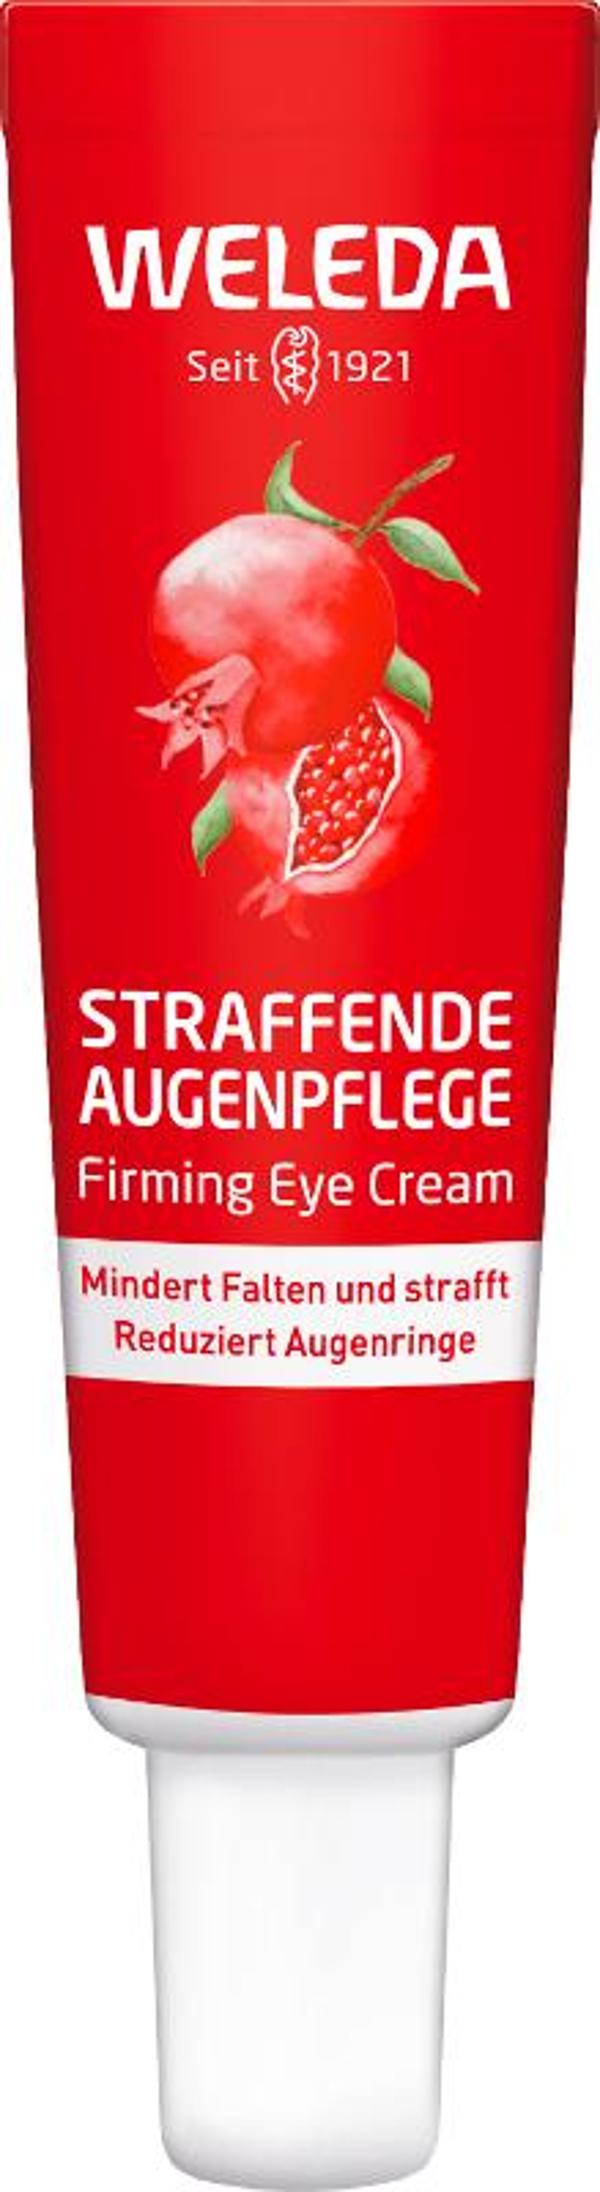 Produktfoto zu Weleda Straffende Augenpflege Granatapfel 12ml